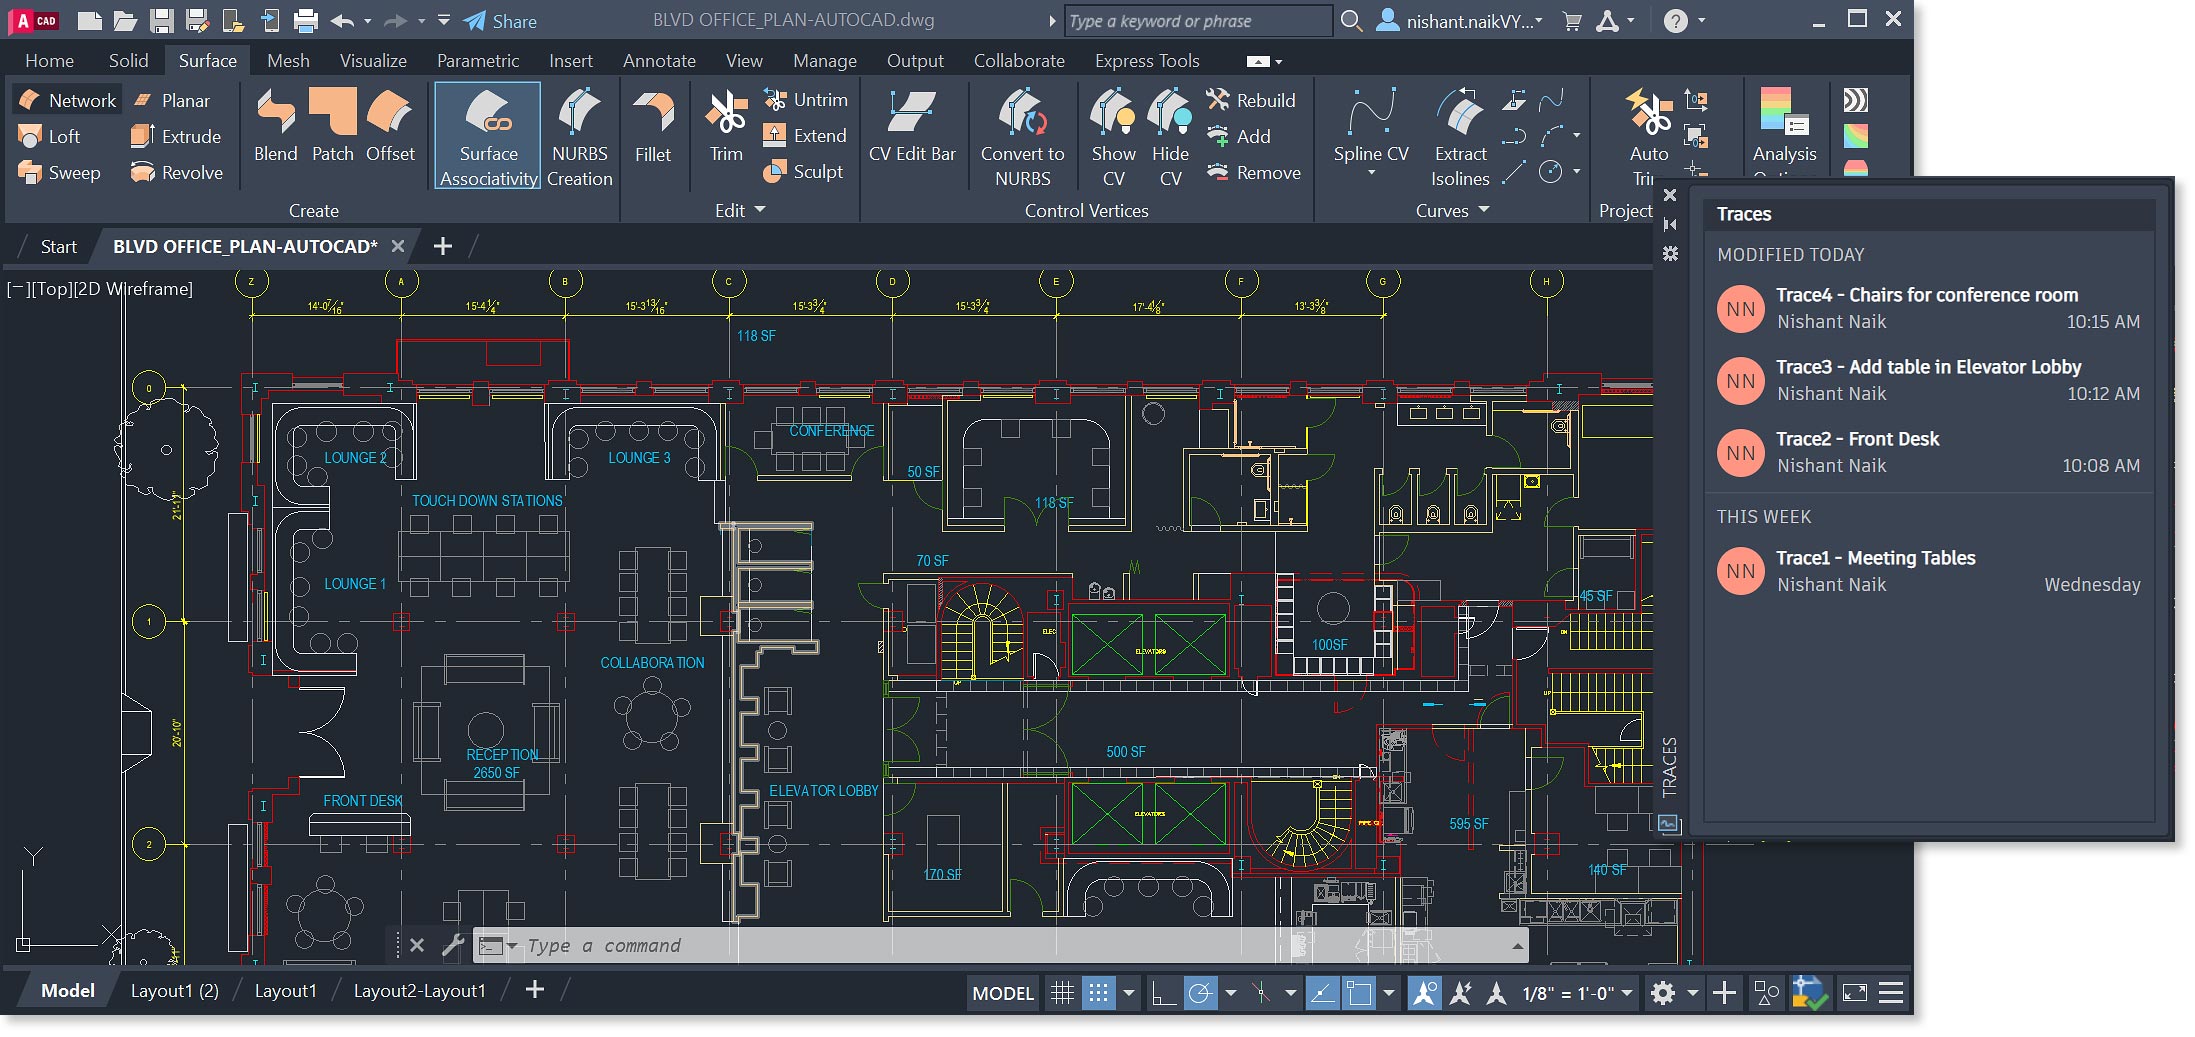 Plattegrond van kantoor in AutoCAD met schematische weergave van de belangrijkste functies